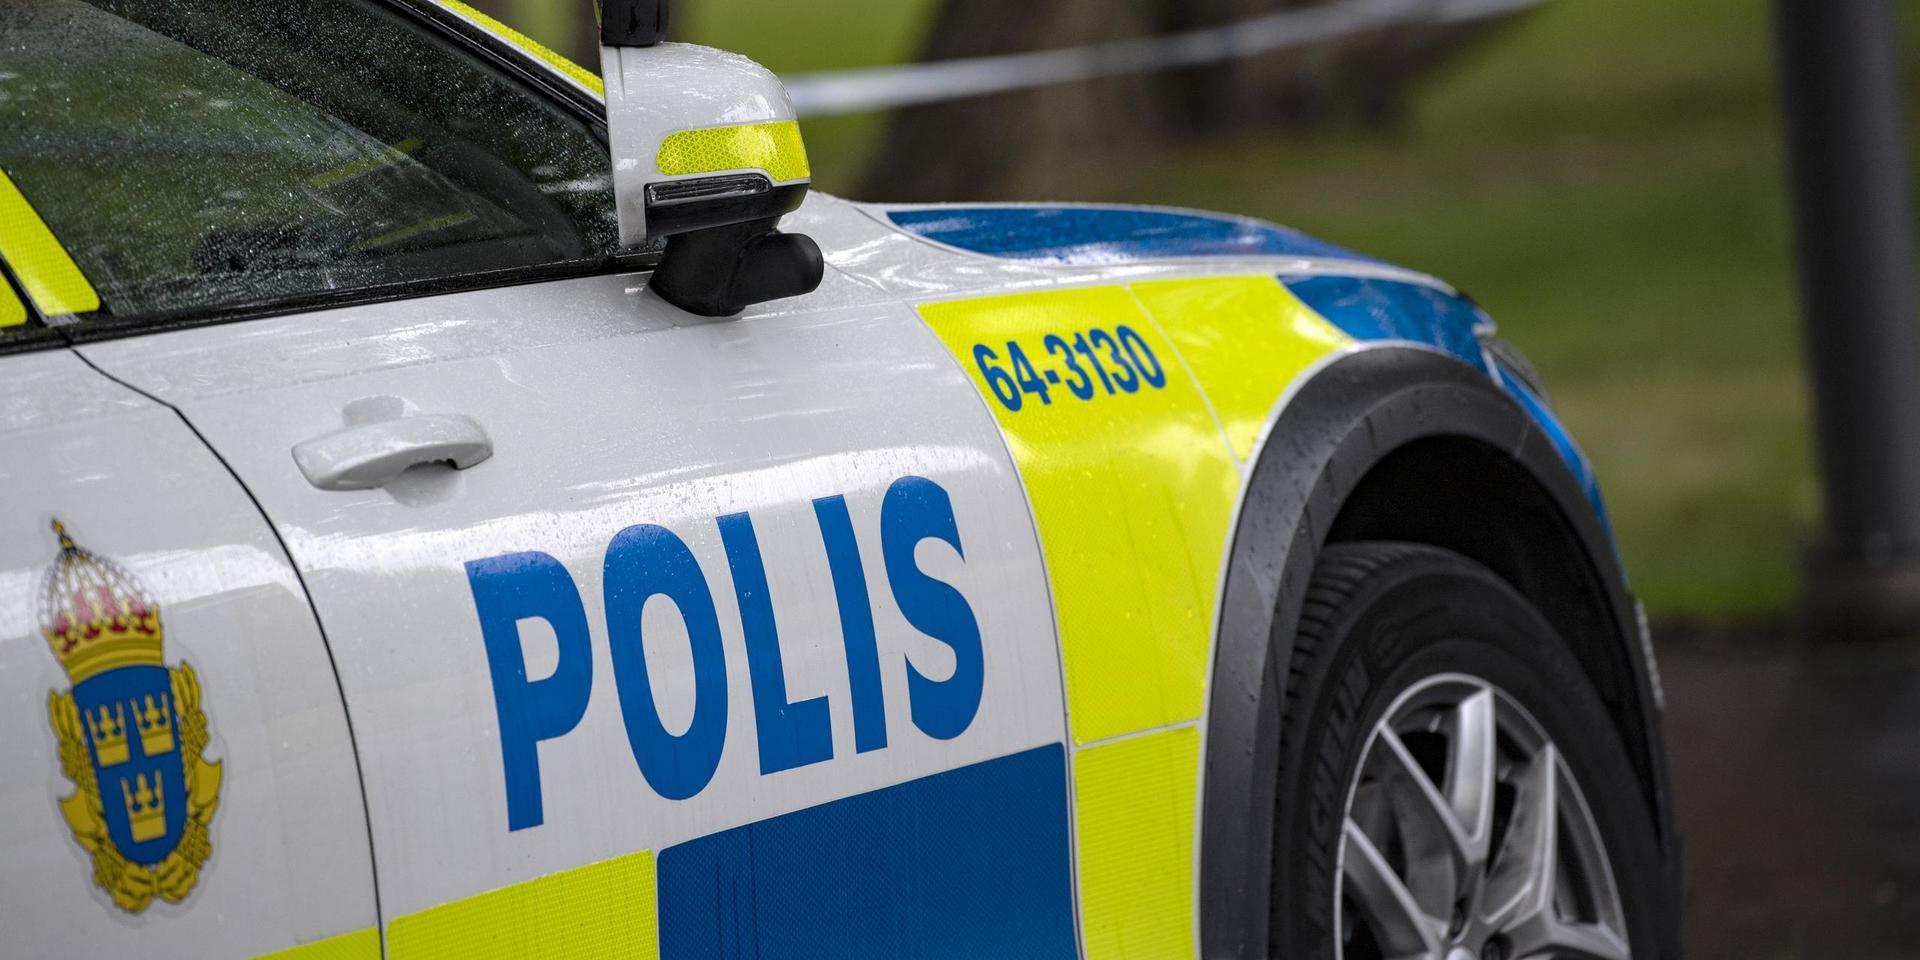 Vid kontroll av en bil i Uddevalla natten mot lördag upptäcktes både en misstänkt narkotikapåverkad passagerare och flera knivar i bilen, uppger polisen.